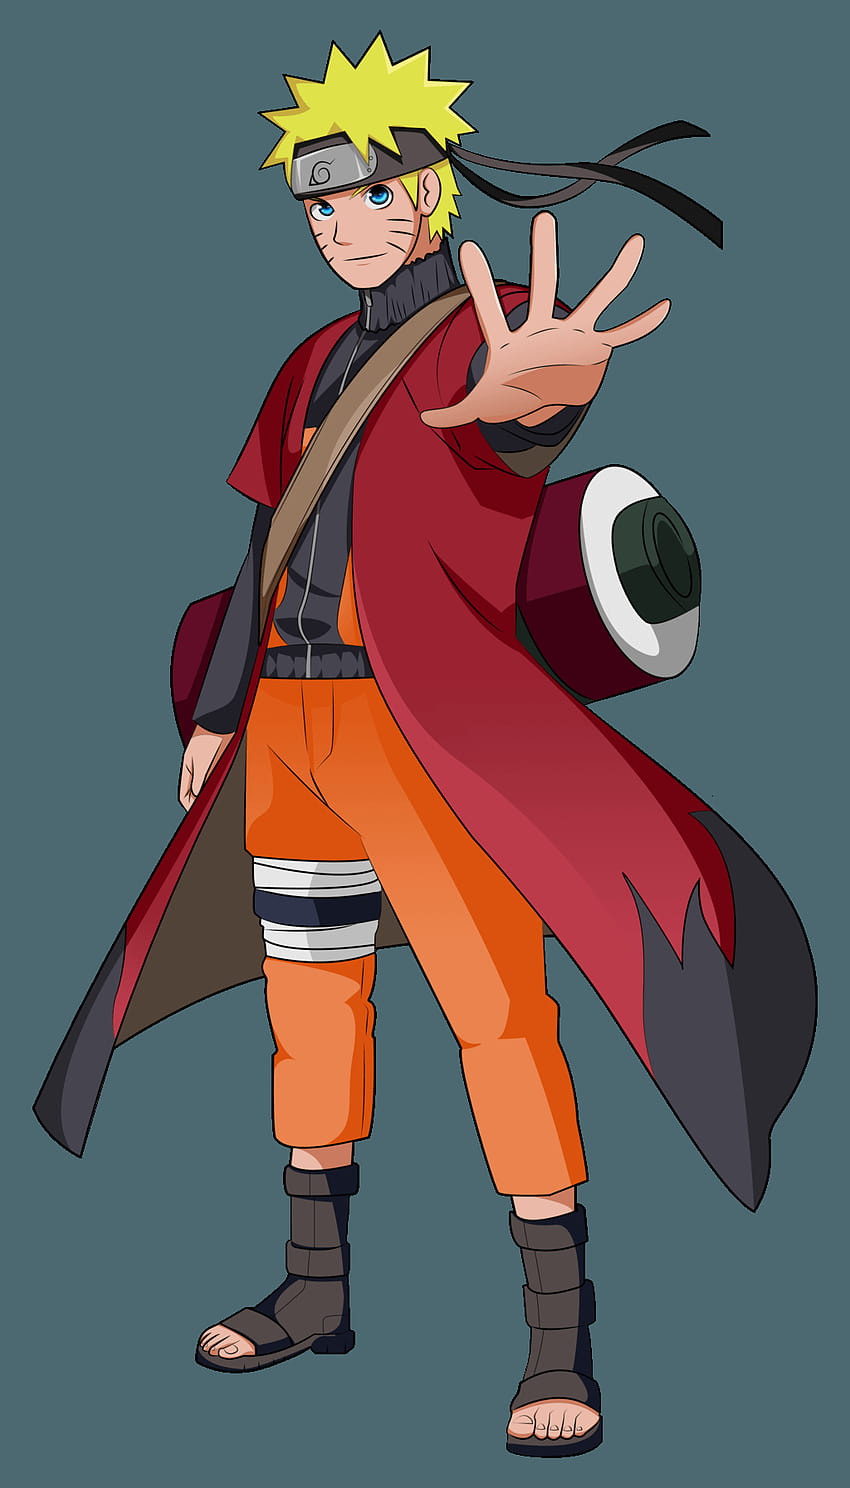 Imagen relacionada  Naruto uzumaki, Naruto sage, Naruto